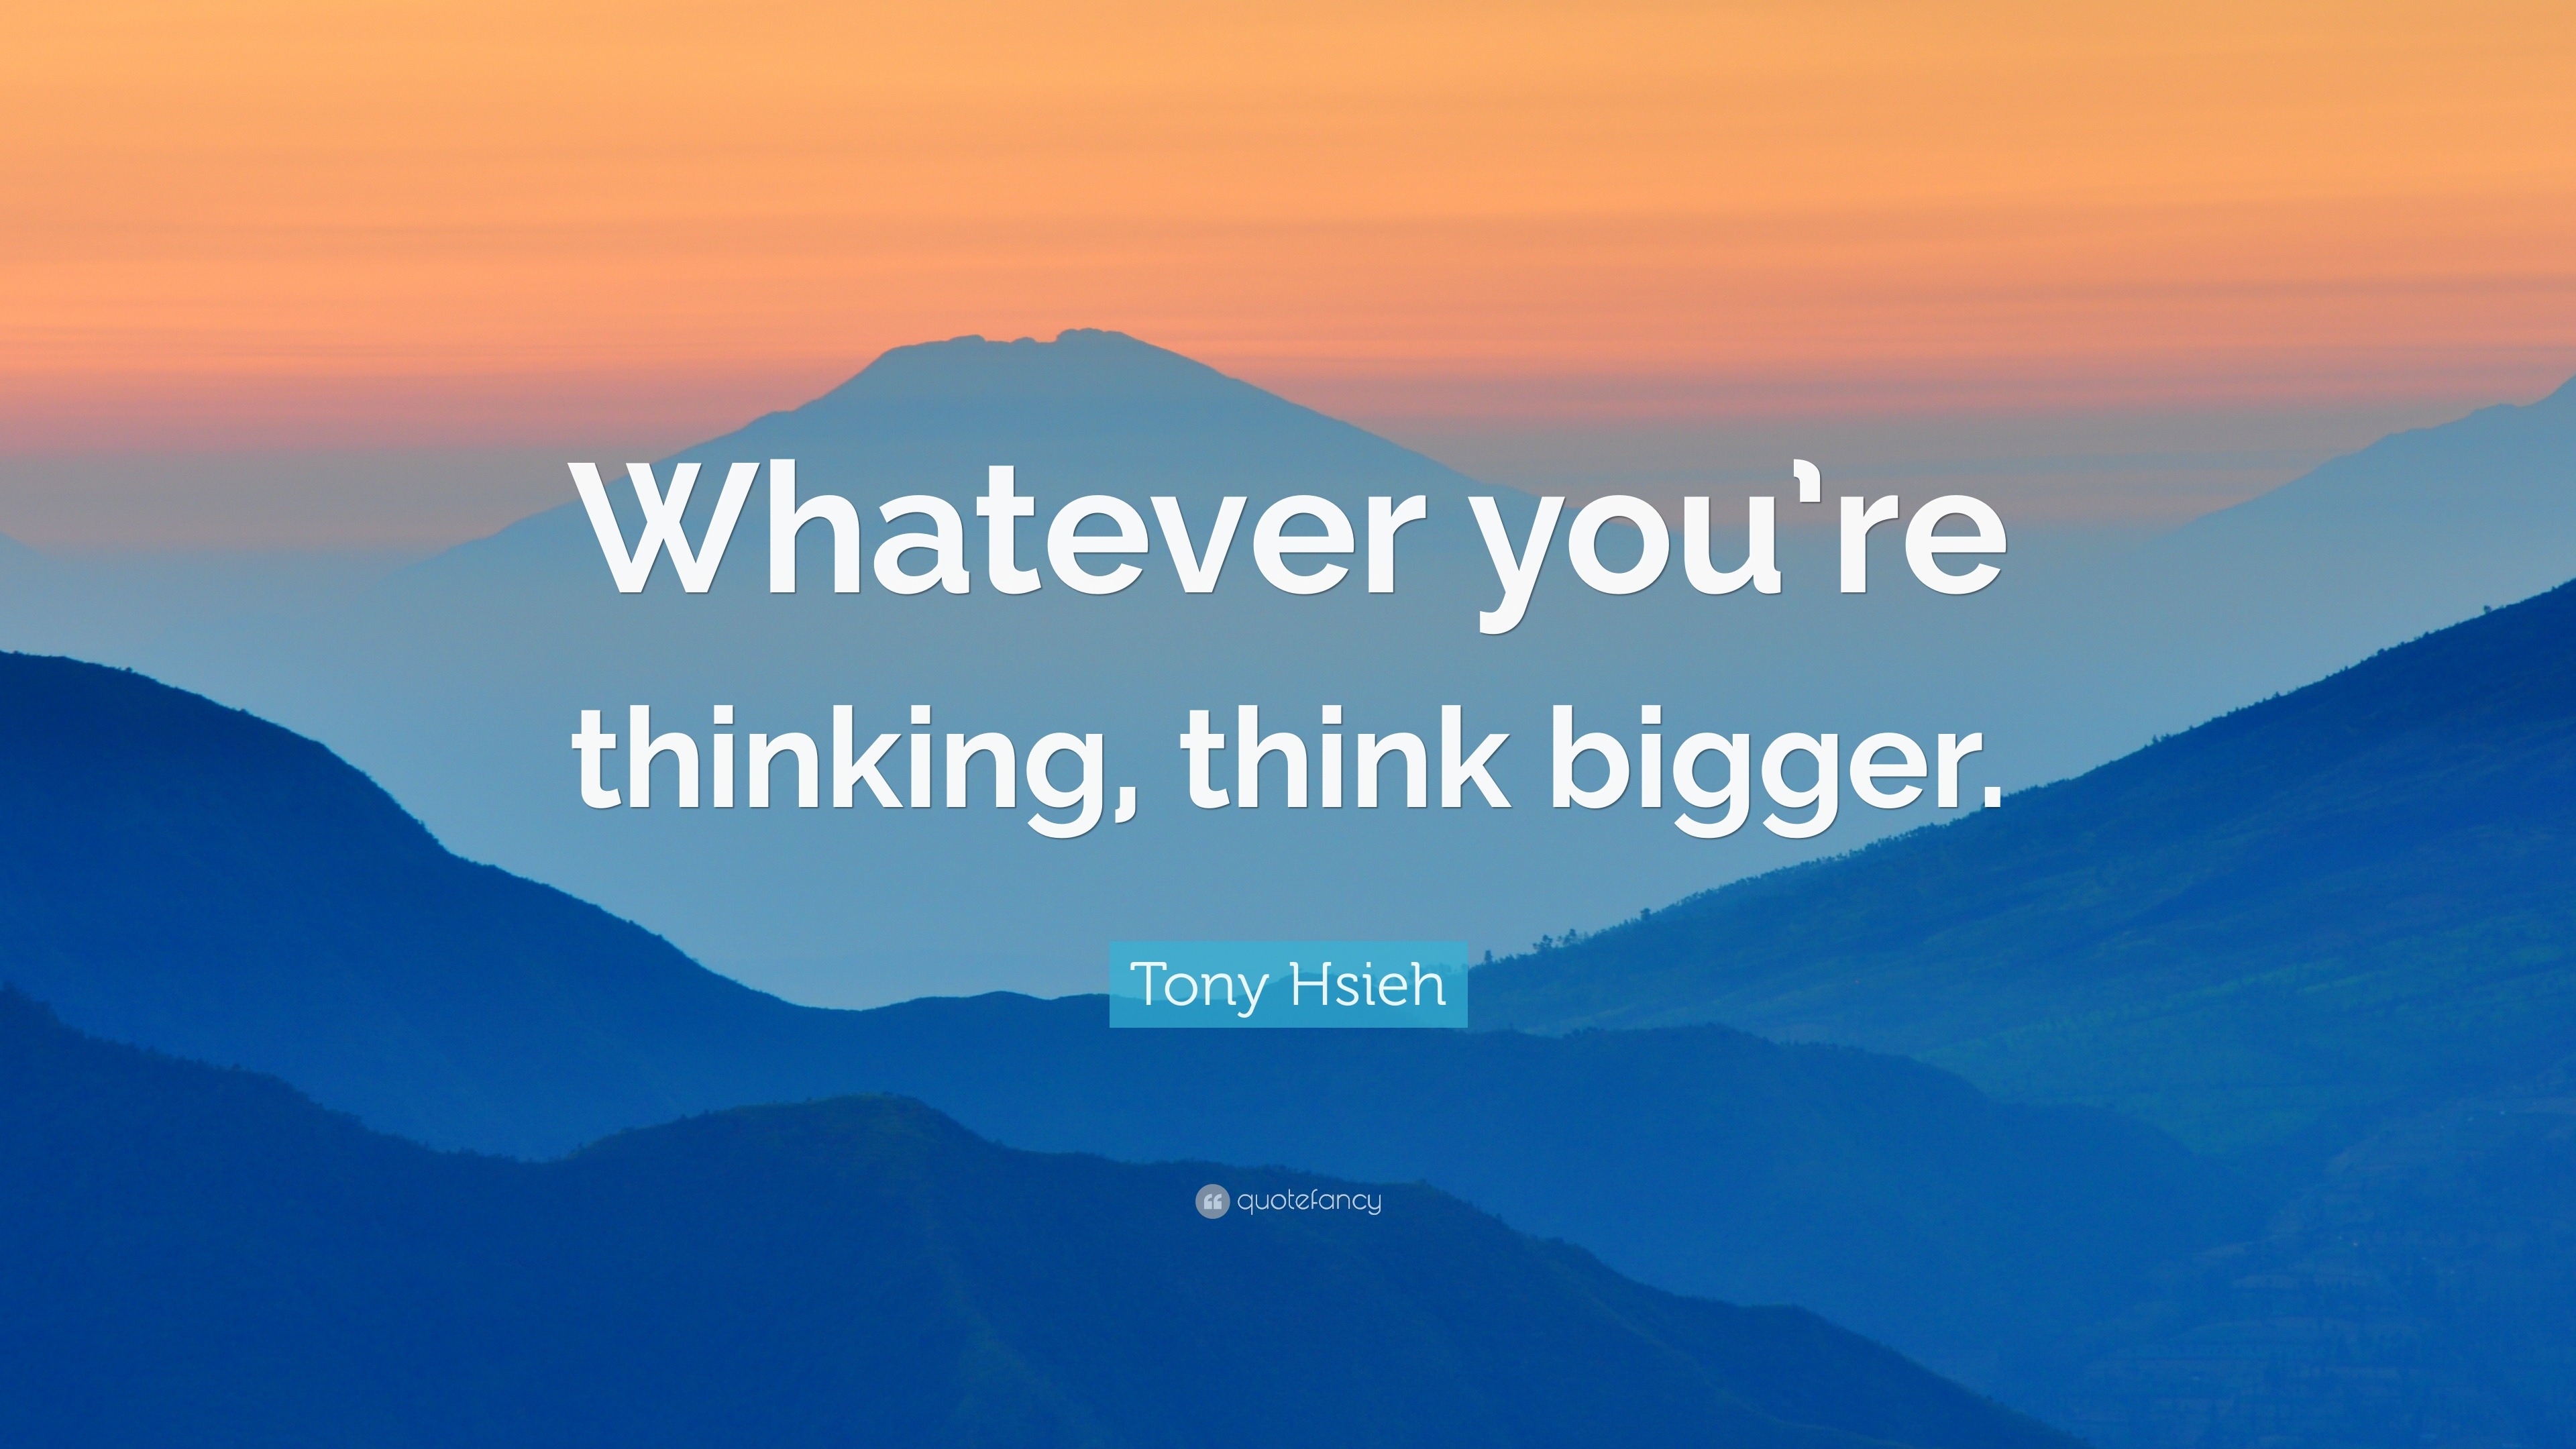 Tony Hsieh Quote: 